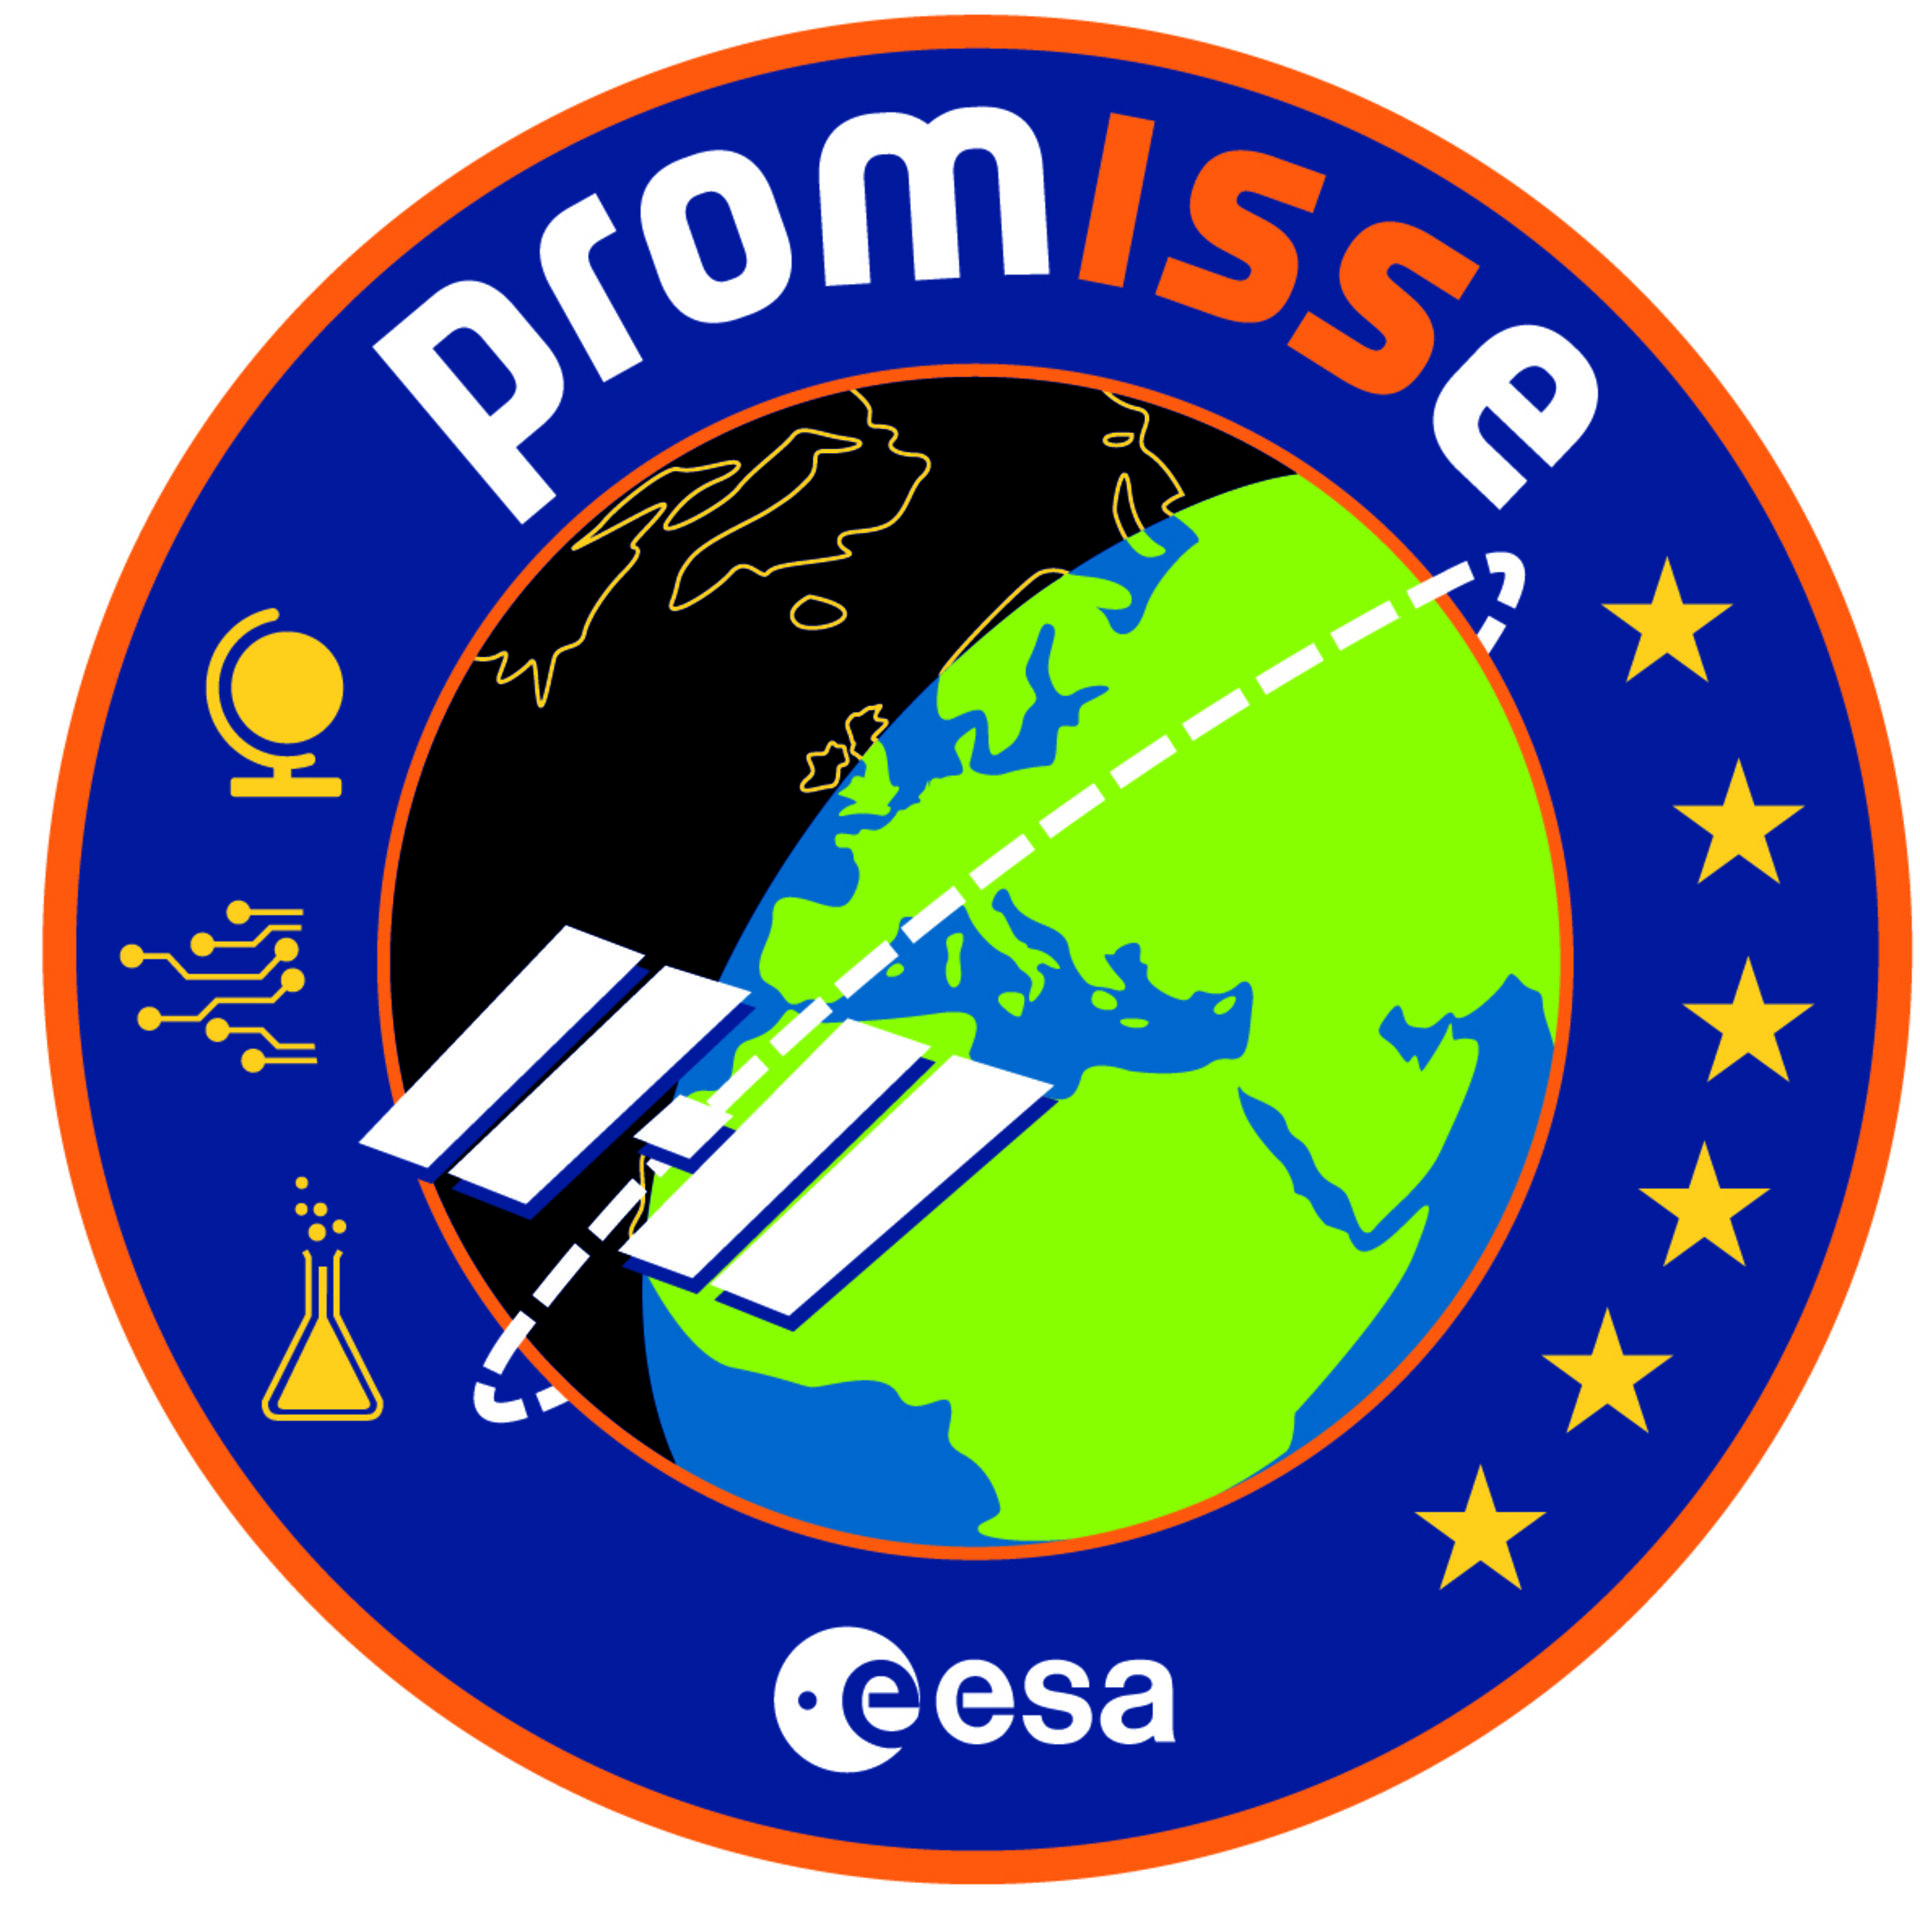 PromISSe mission logo